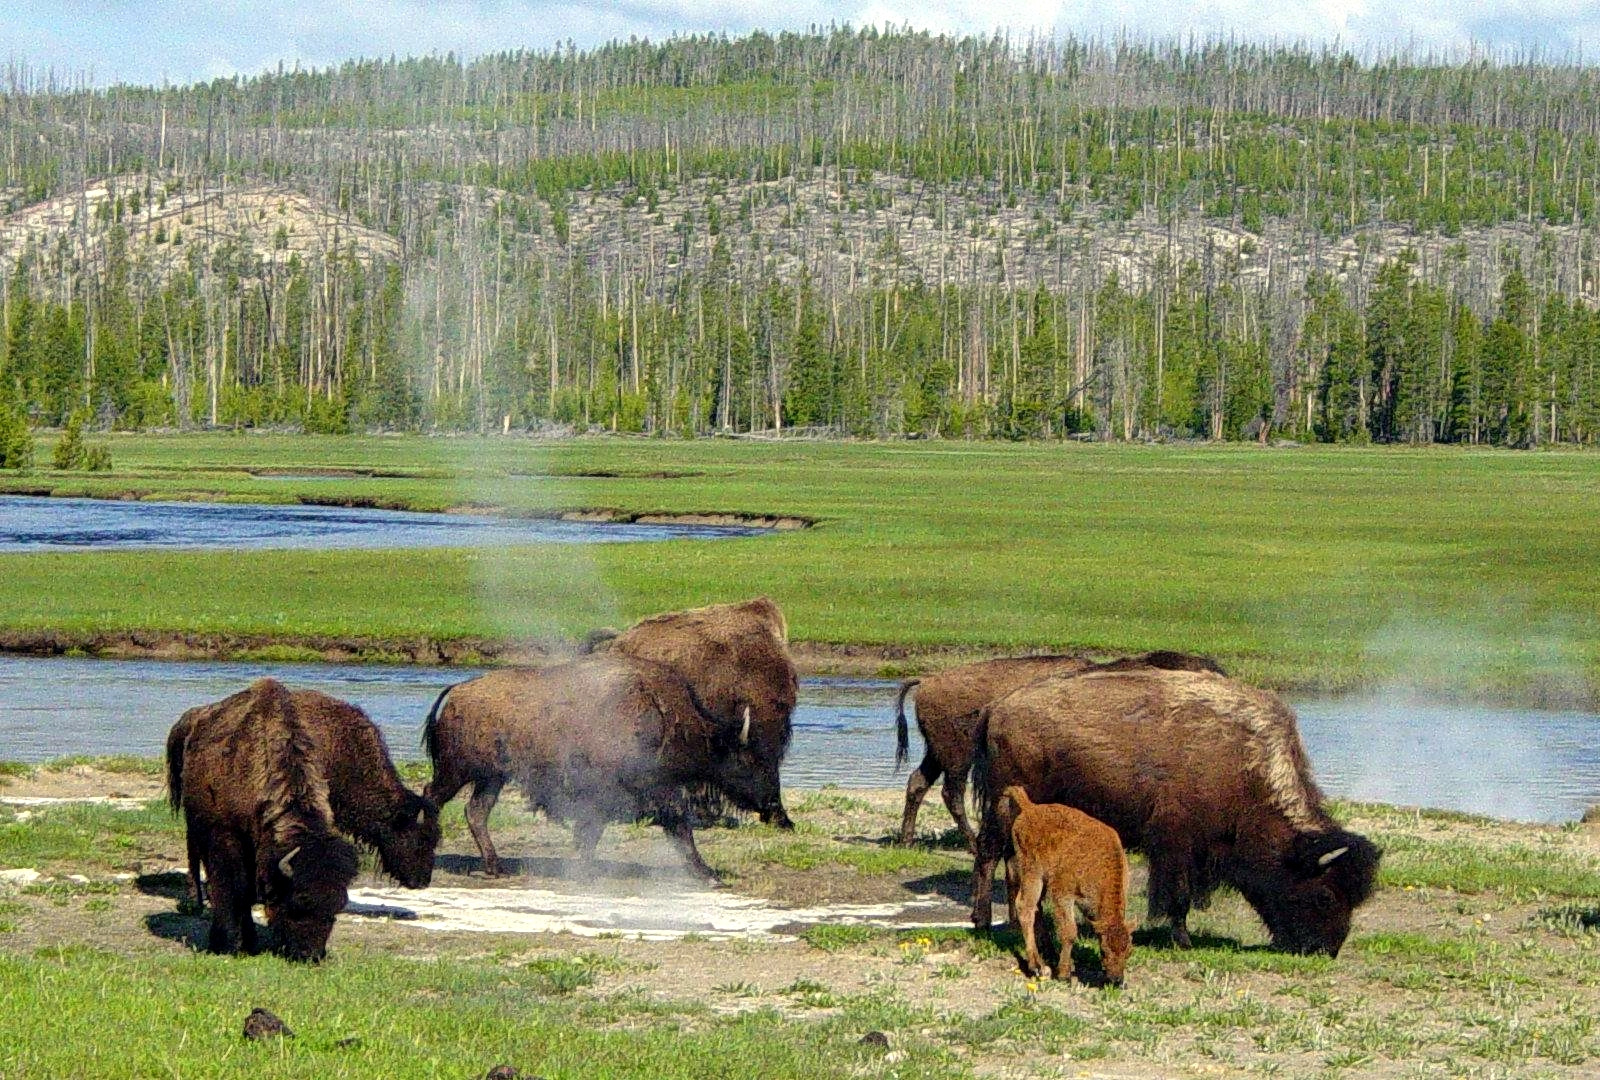 Najstarší národný park na svete je známy predovšetkým pre svoju divočinu a geotermálne úkazy, ktoré vďačia za svoju existenciu bohatej vulkanickej činnosti. Pri návšteve rozhodne nezabudnite na gejzír Old Faithful, ktorý chrlí vodu s parou až do výšky 55 metrov. 

Keď sa povie Yellowstone, alebo rozprávkovo Jellystone, snáď každý si spomenie na kreslenú postavičku, ktorú pozná celý svet - medveďa Yogiho. Naživo tu môžete naraziť na ozajstné medvede grizzly alebo vlky či voľne žijúce stáda bizónov. 

„V amerických parkoch žije veľmi veľa medveďov, preto pri kempovaní nenechávajte jedlo v stane ani v aute. Všade nájdete špeciálne skrinky, ktoré sú tu práve kvôli ochrane pred medveďmi,“ varuje Miroslava Zelenáková. 

V Yellowstone sa môžete povoziť na loďkách alebo si zarybárčiť. Vďaka upraveným cestám sa pohodlne dostanete ku všetkým hlavným zaujímavostiam.
